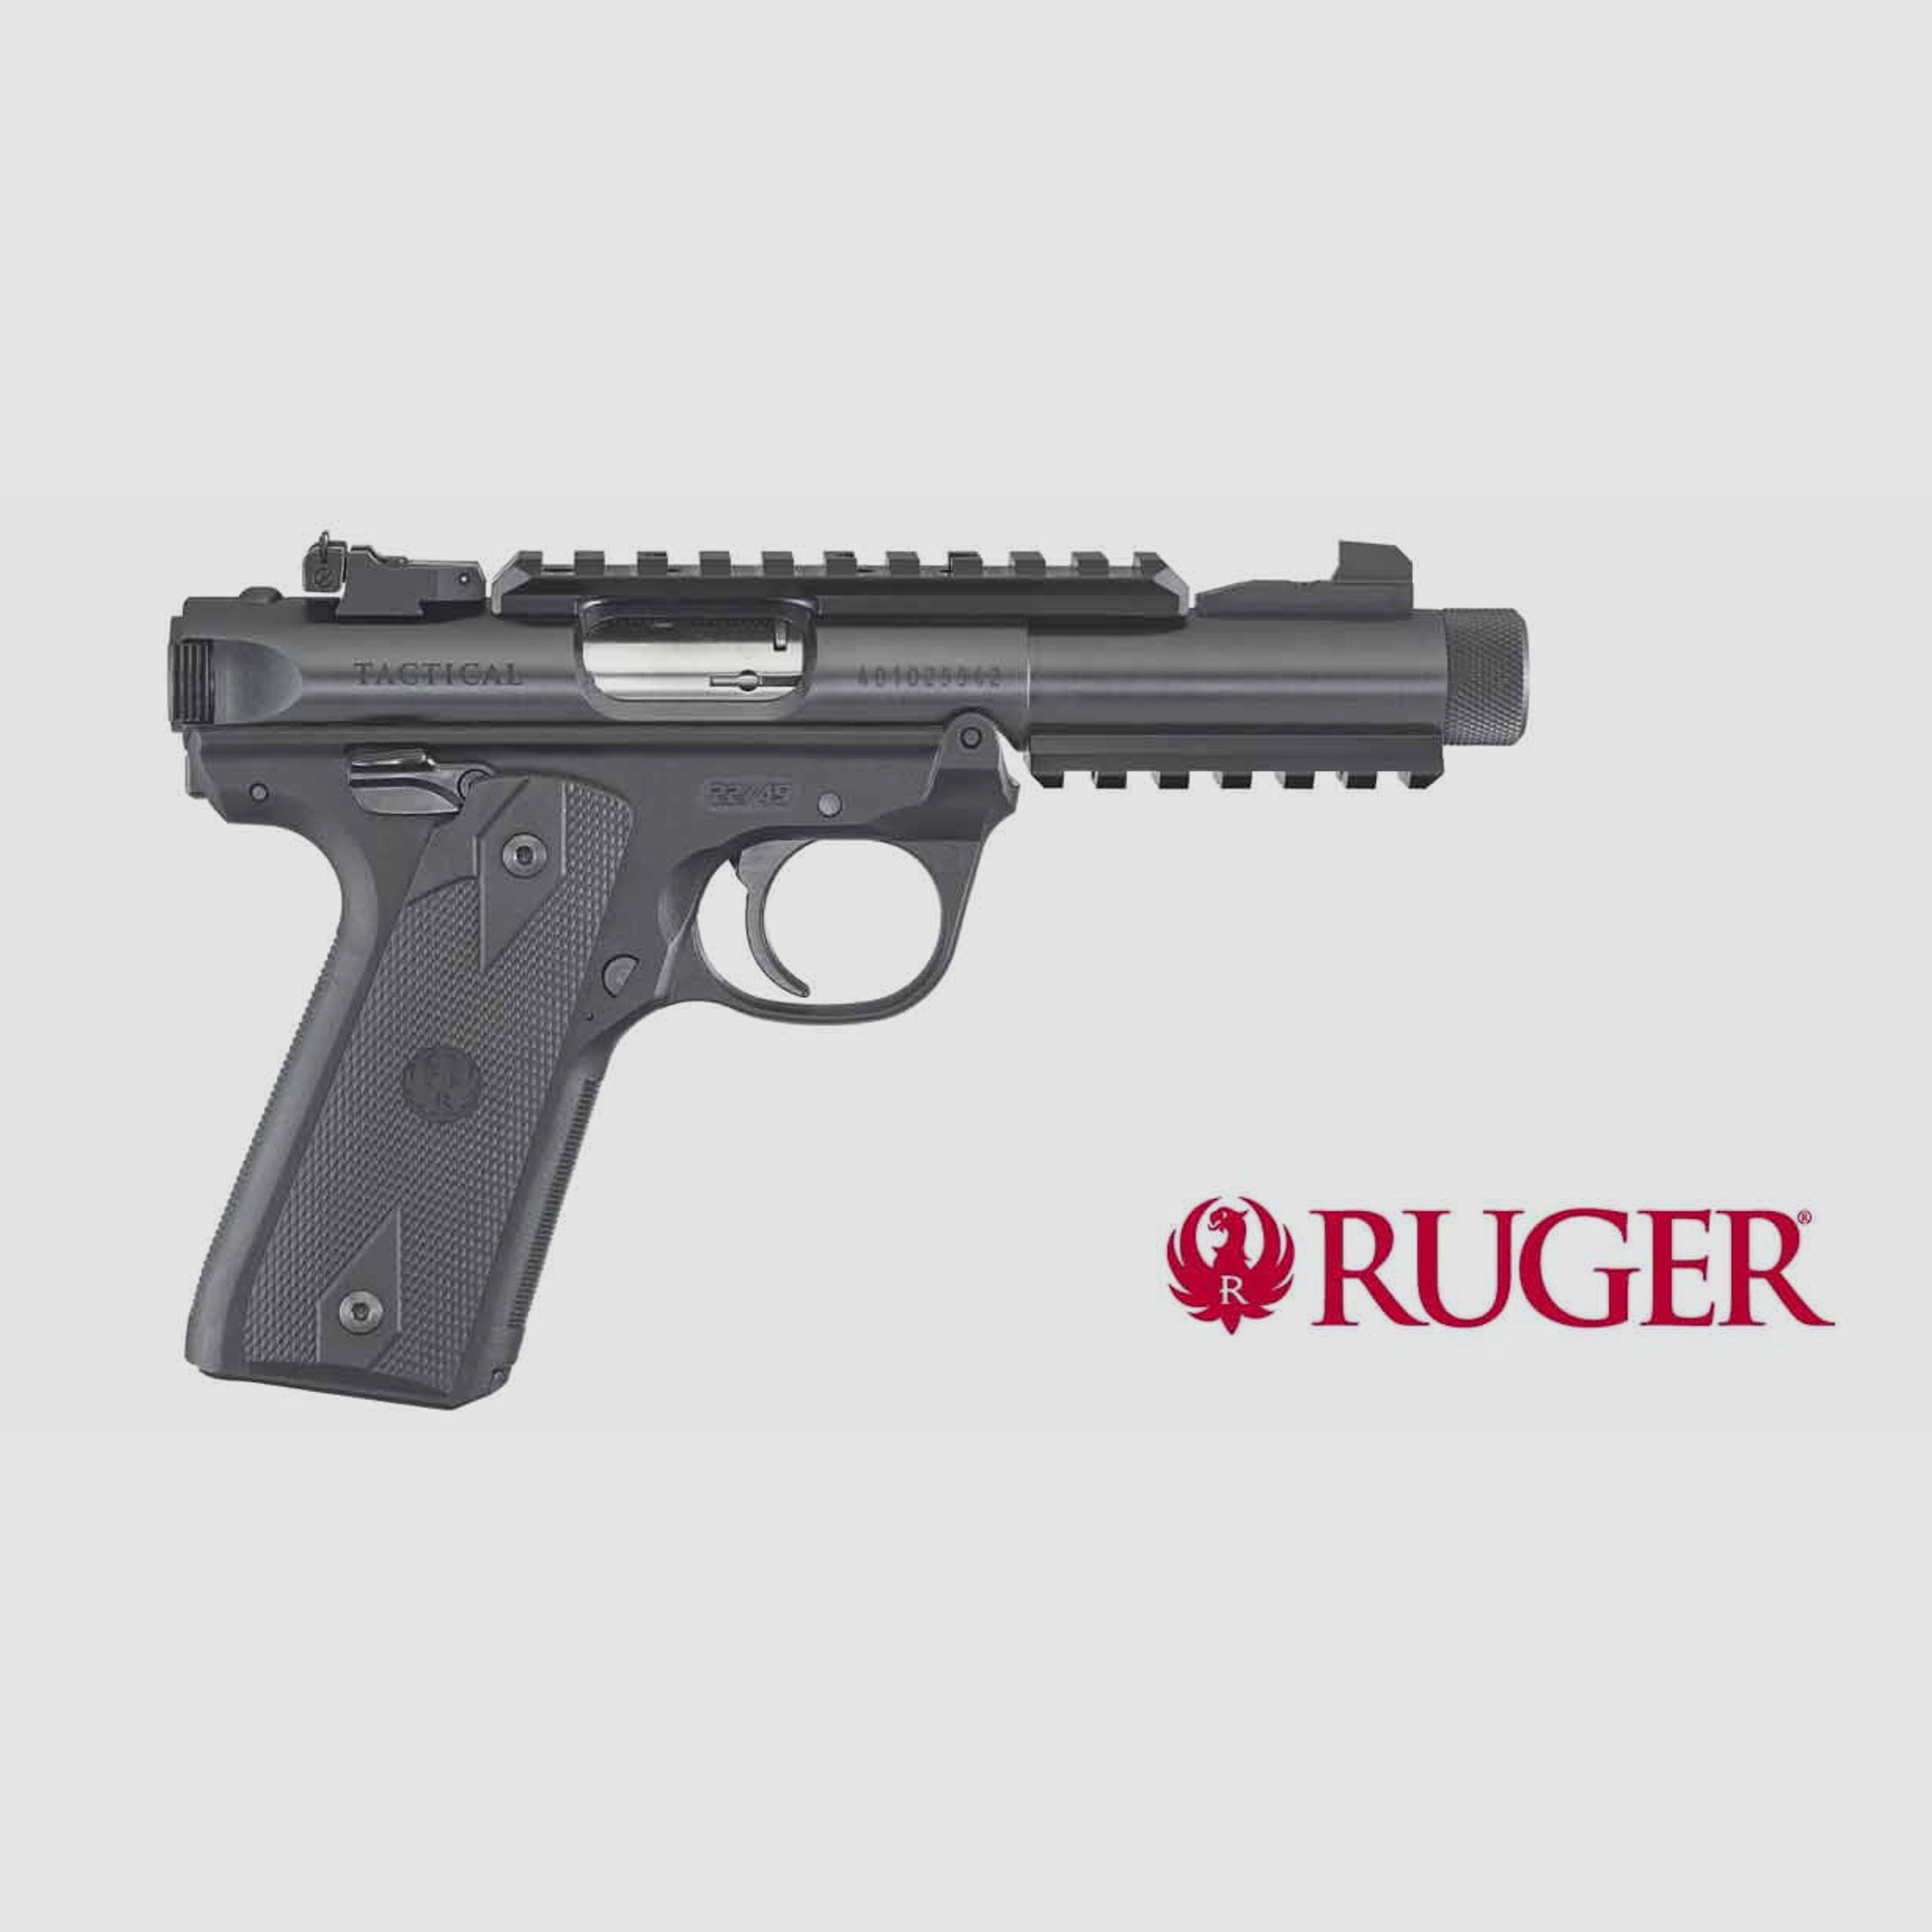 Ruger Mark IV 22/45 Tactical